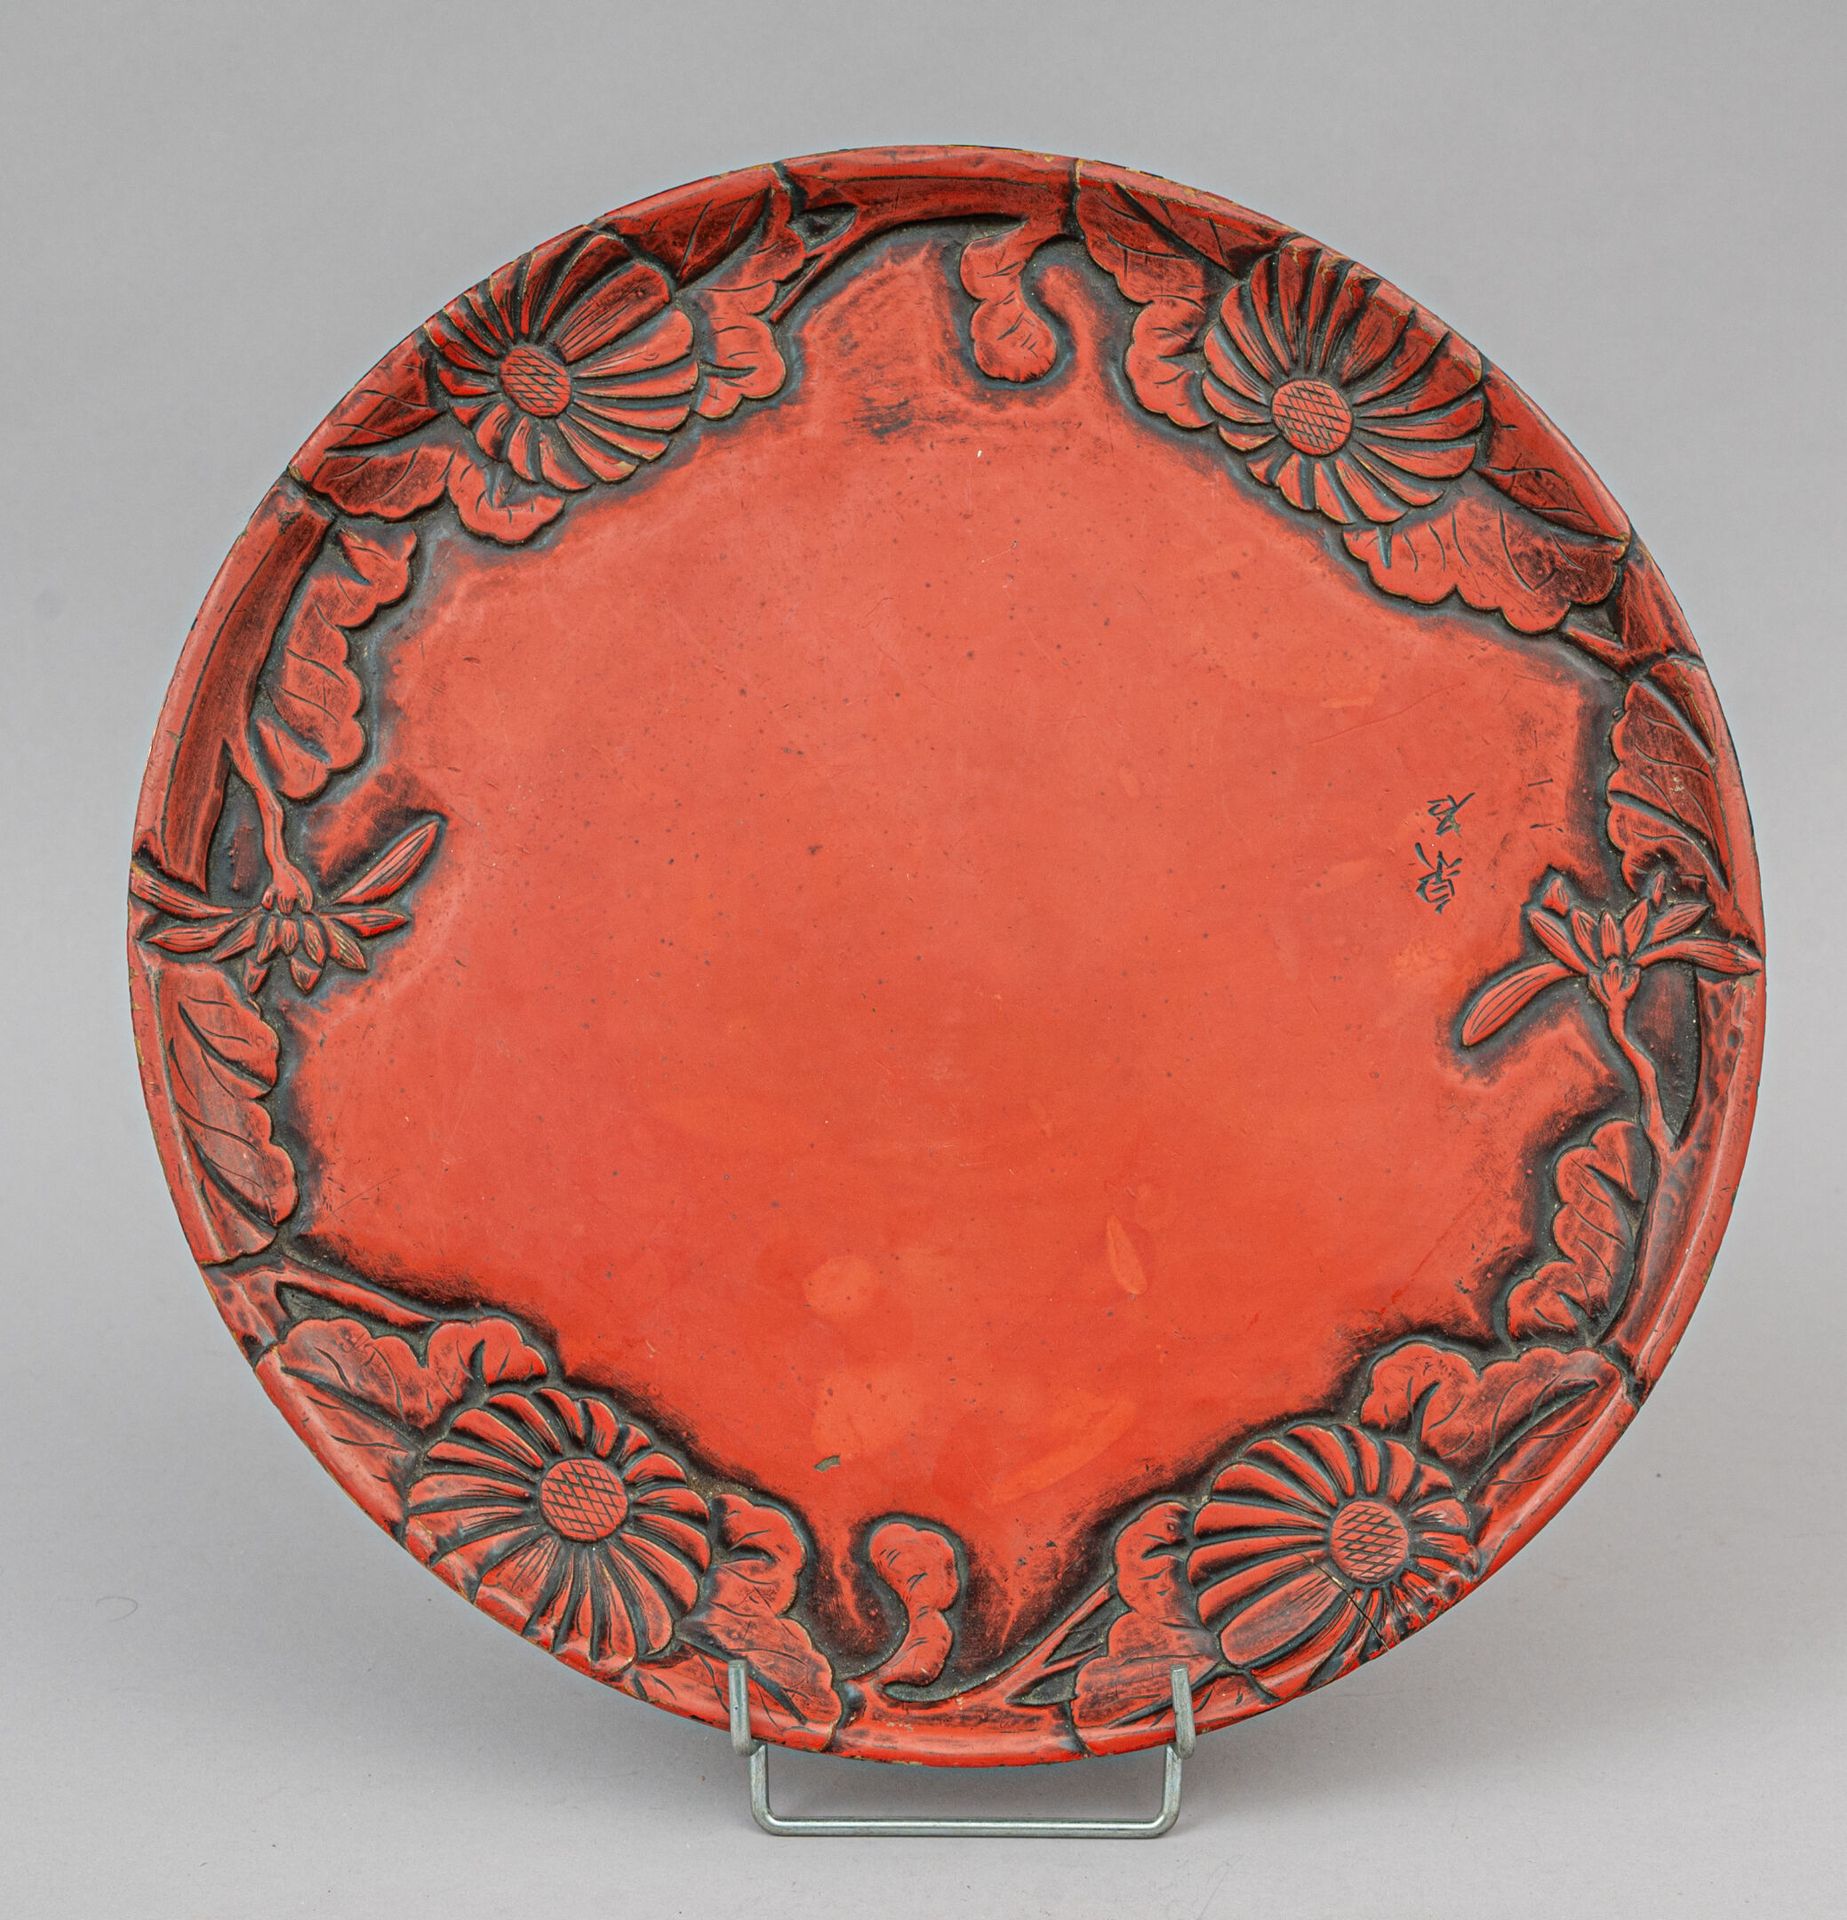 Null 红漆木盘，日本，20 世纪早期
圆形，边缘浮雕菊花和叶子，背面黑漆，顶部刻有签名。磨损、划痕、裂纹
直径 35 厘米